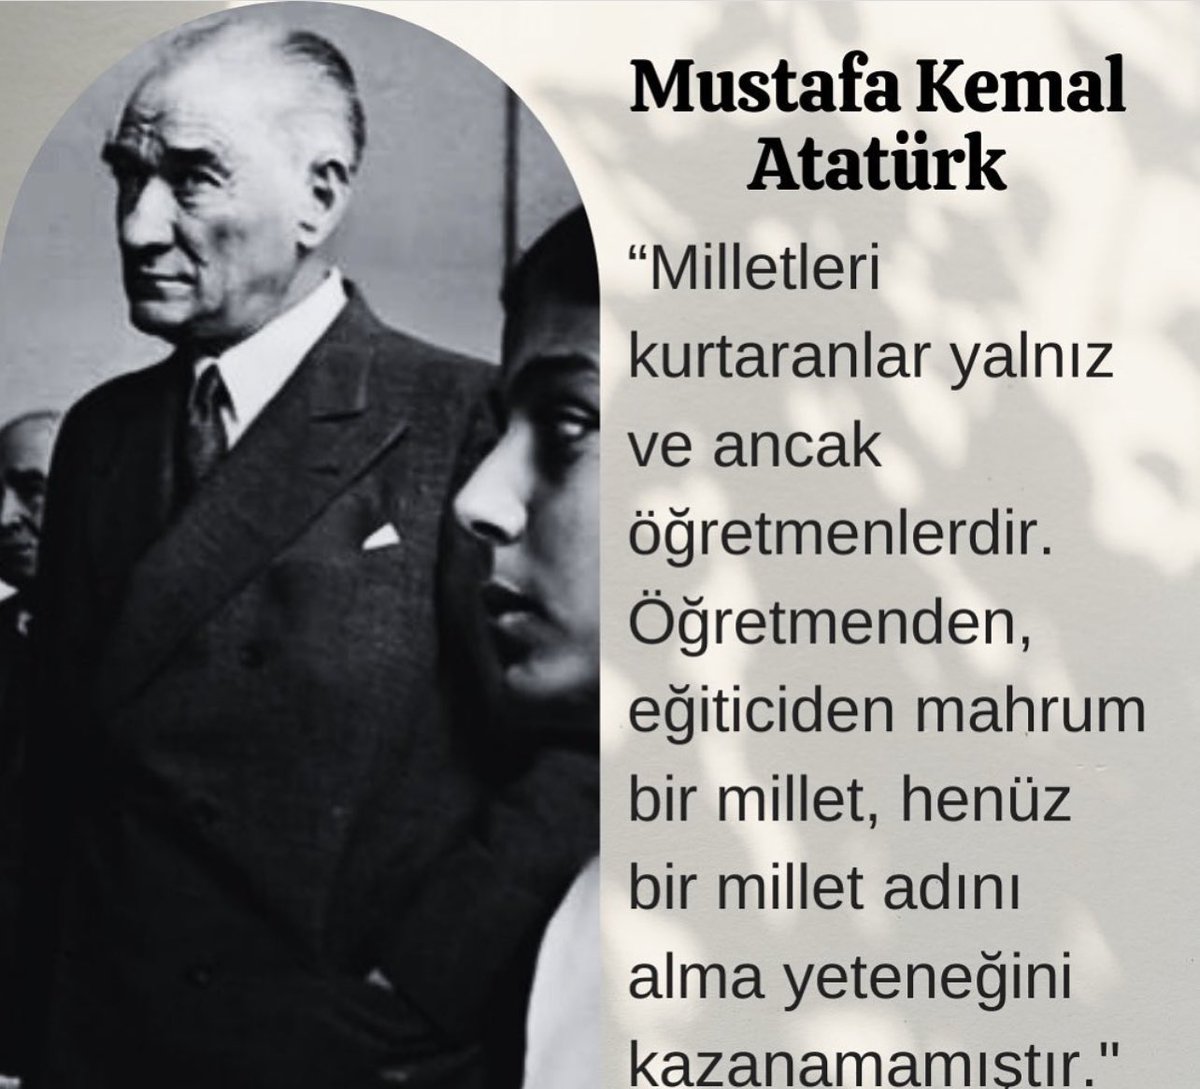 #MustafaKemalAtatürk #LaikEgitimAydınlıkTürkiye #BakanTekinKoltuğuTerket